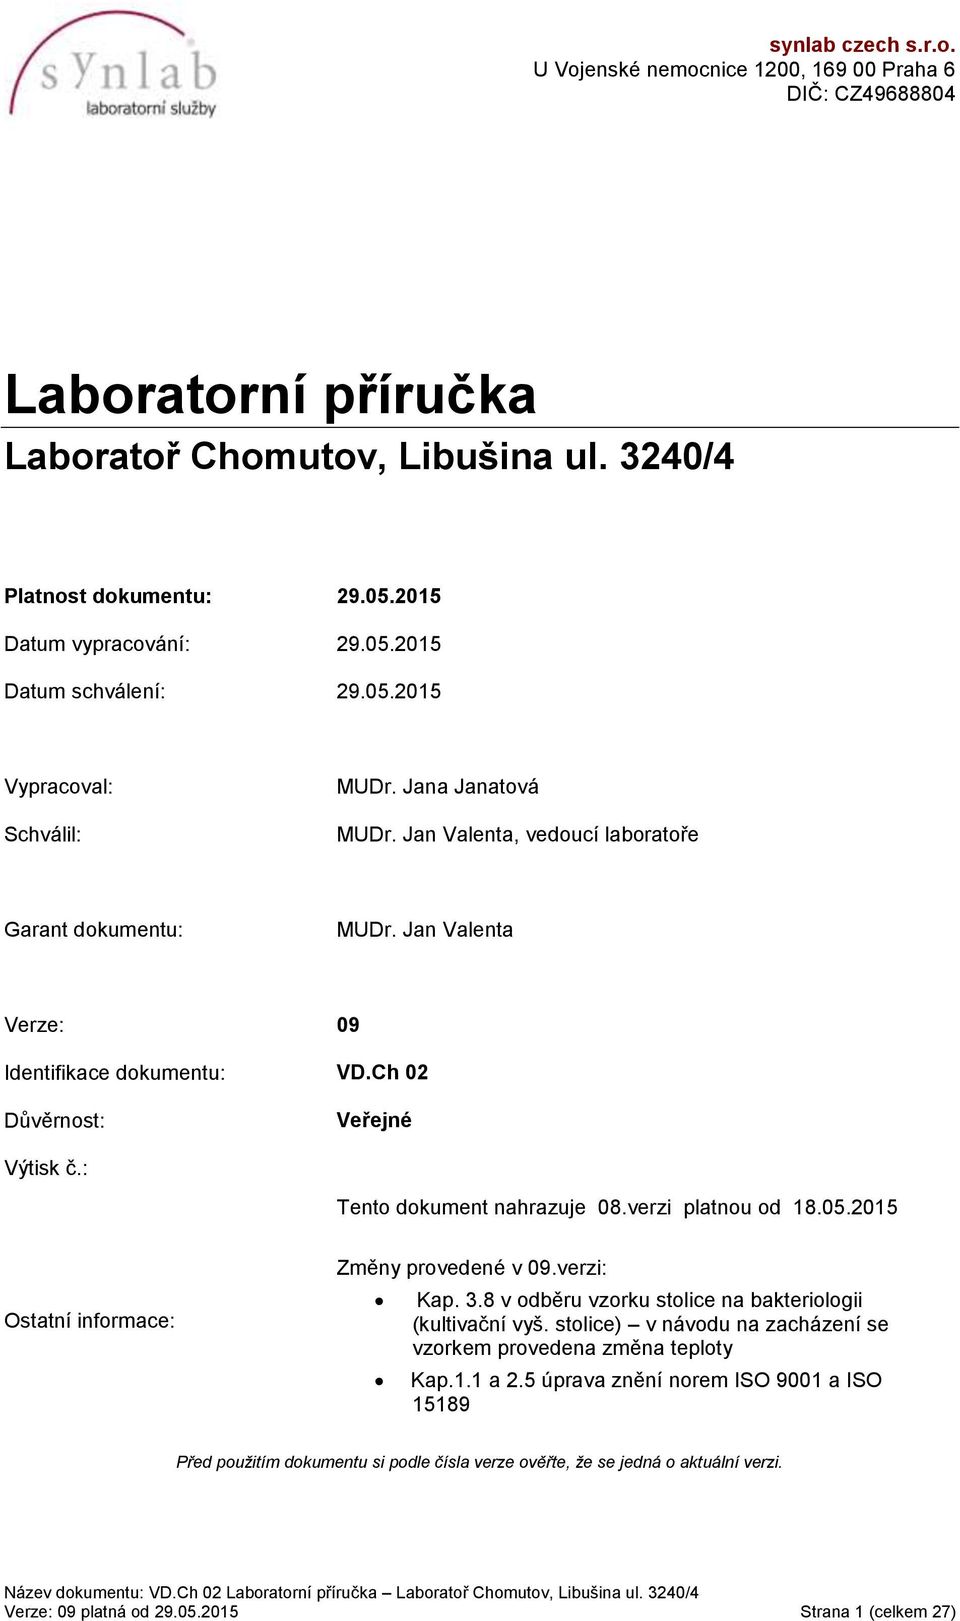 : Tento dokument nahrazuje 08.verzi platnou od 18.05.2015 Ostatní informace: Změny provedené v 09.verzi: Kap. 3.8 v odběru vzorku stolice na bakteriologii (kultivační vyš.